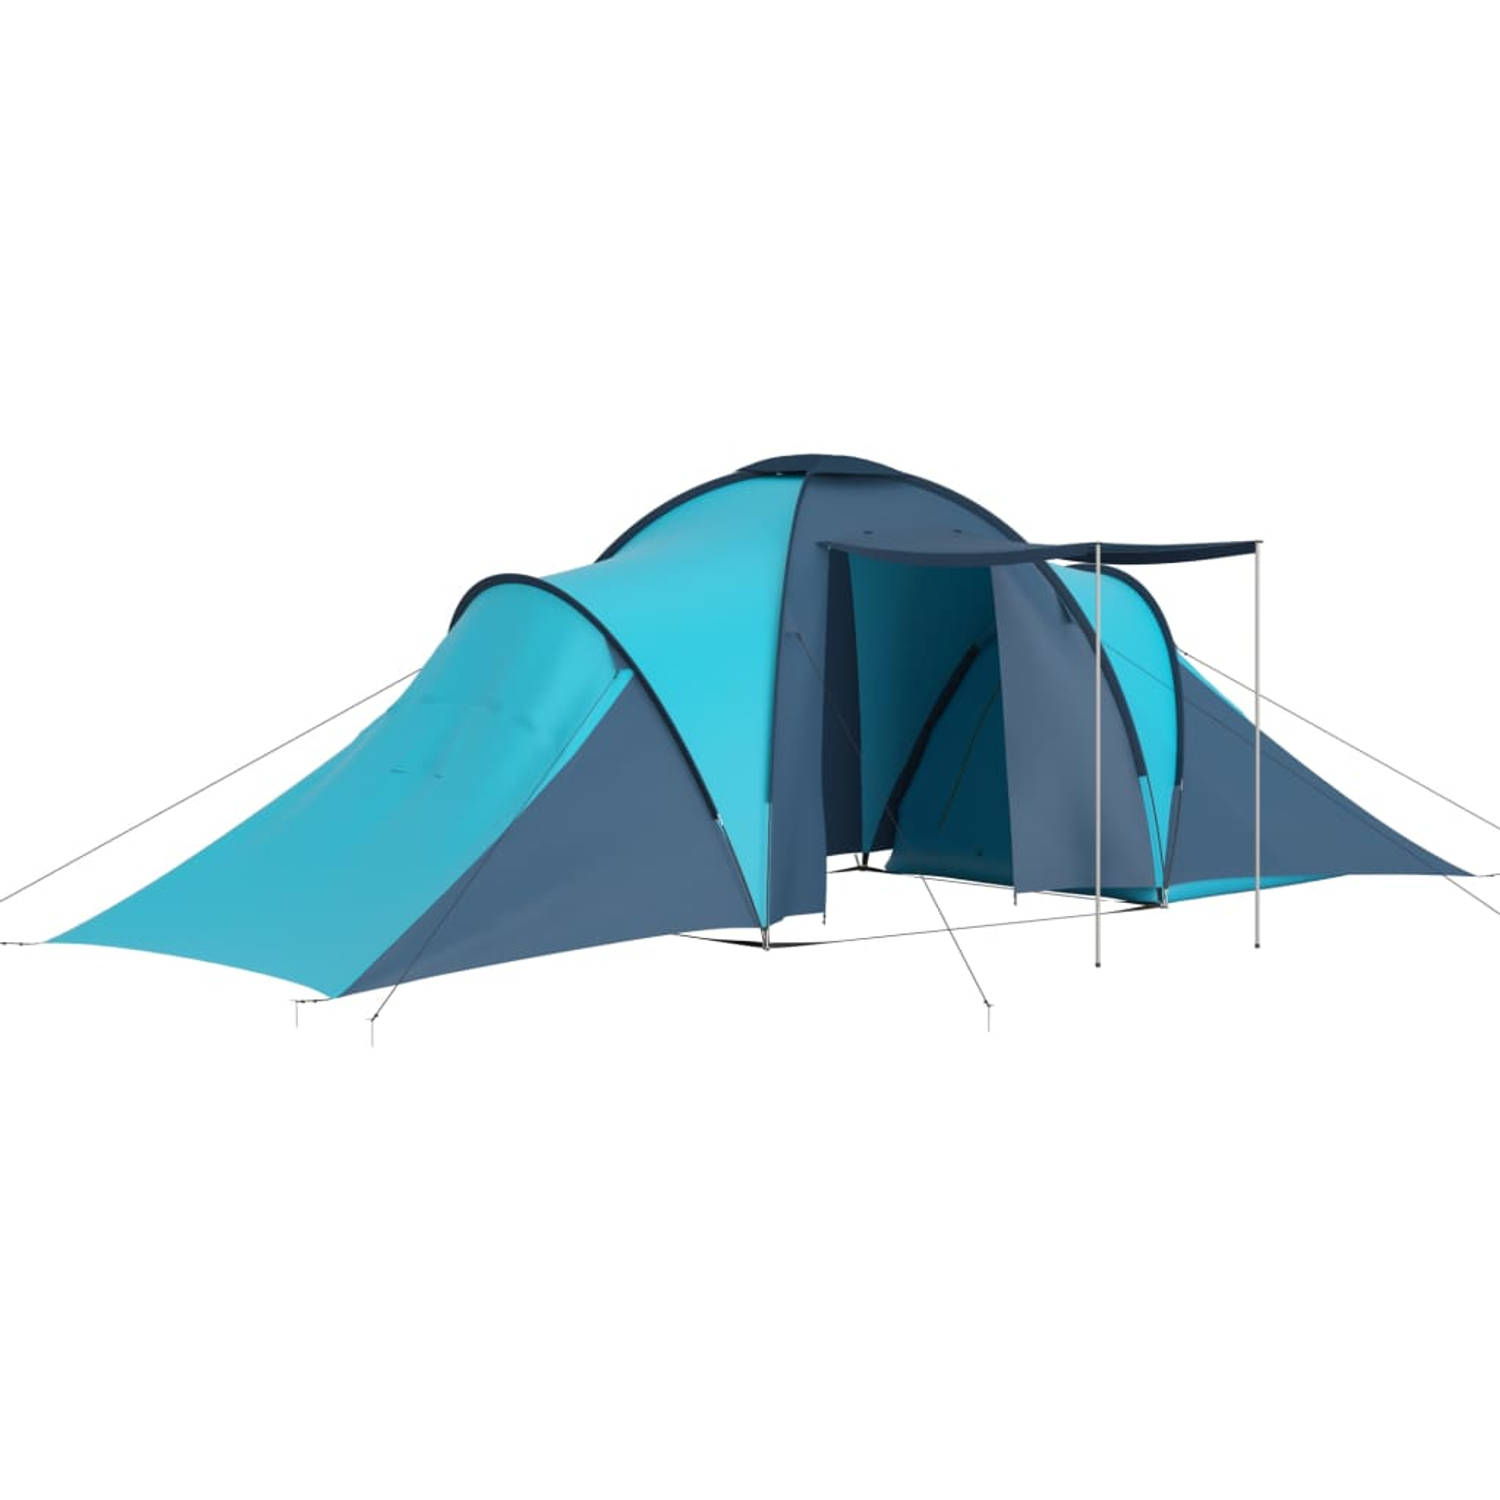 The Living Store kampeertent Grote tent - 576 x 235 x 190 cm - 6 persoons - 2 compartimenten - blauw en lichtblauw